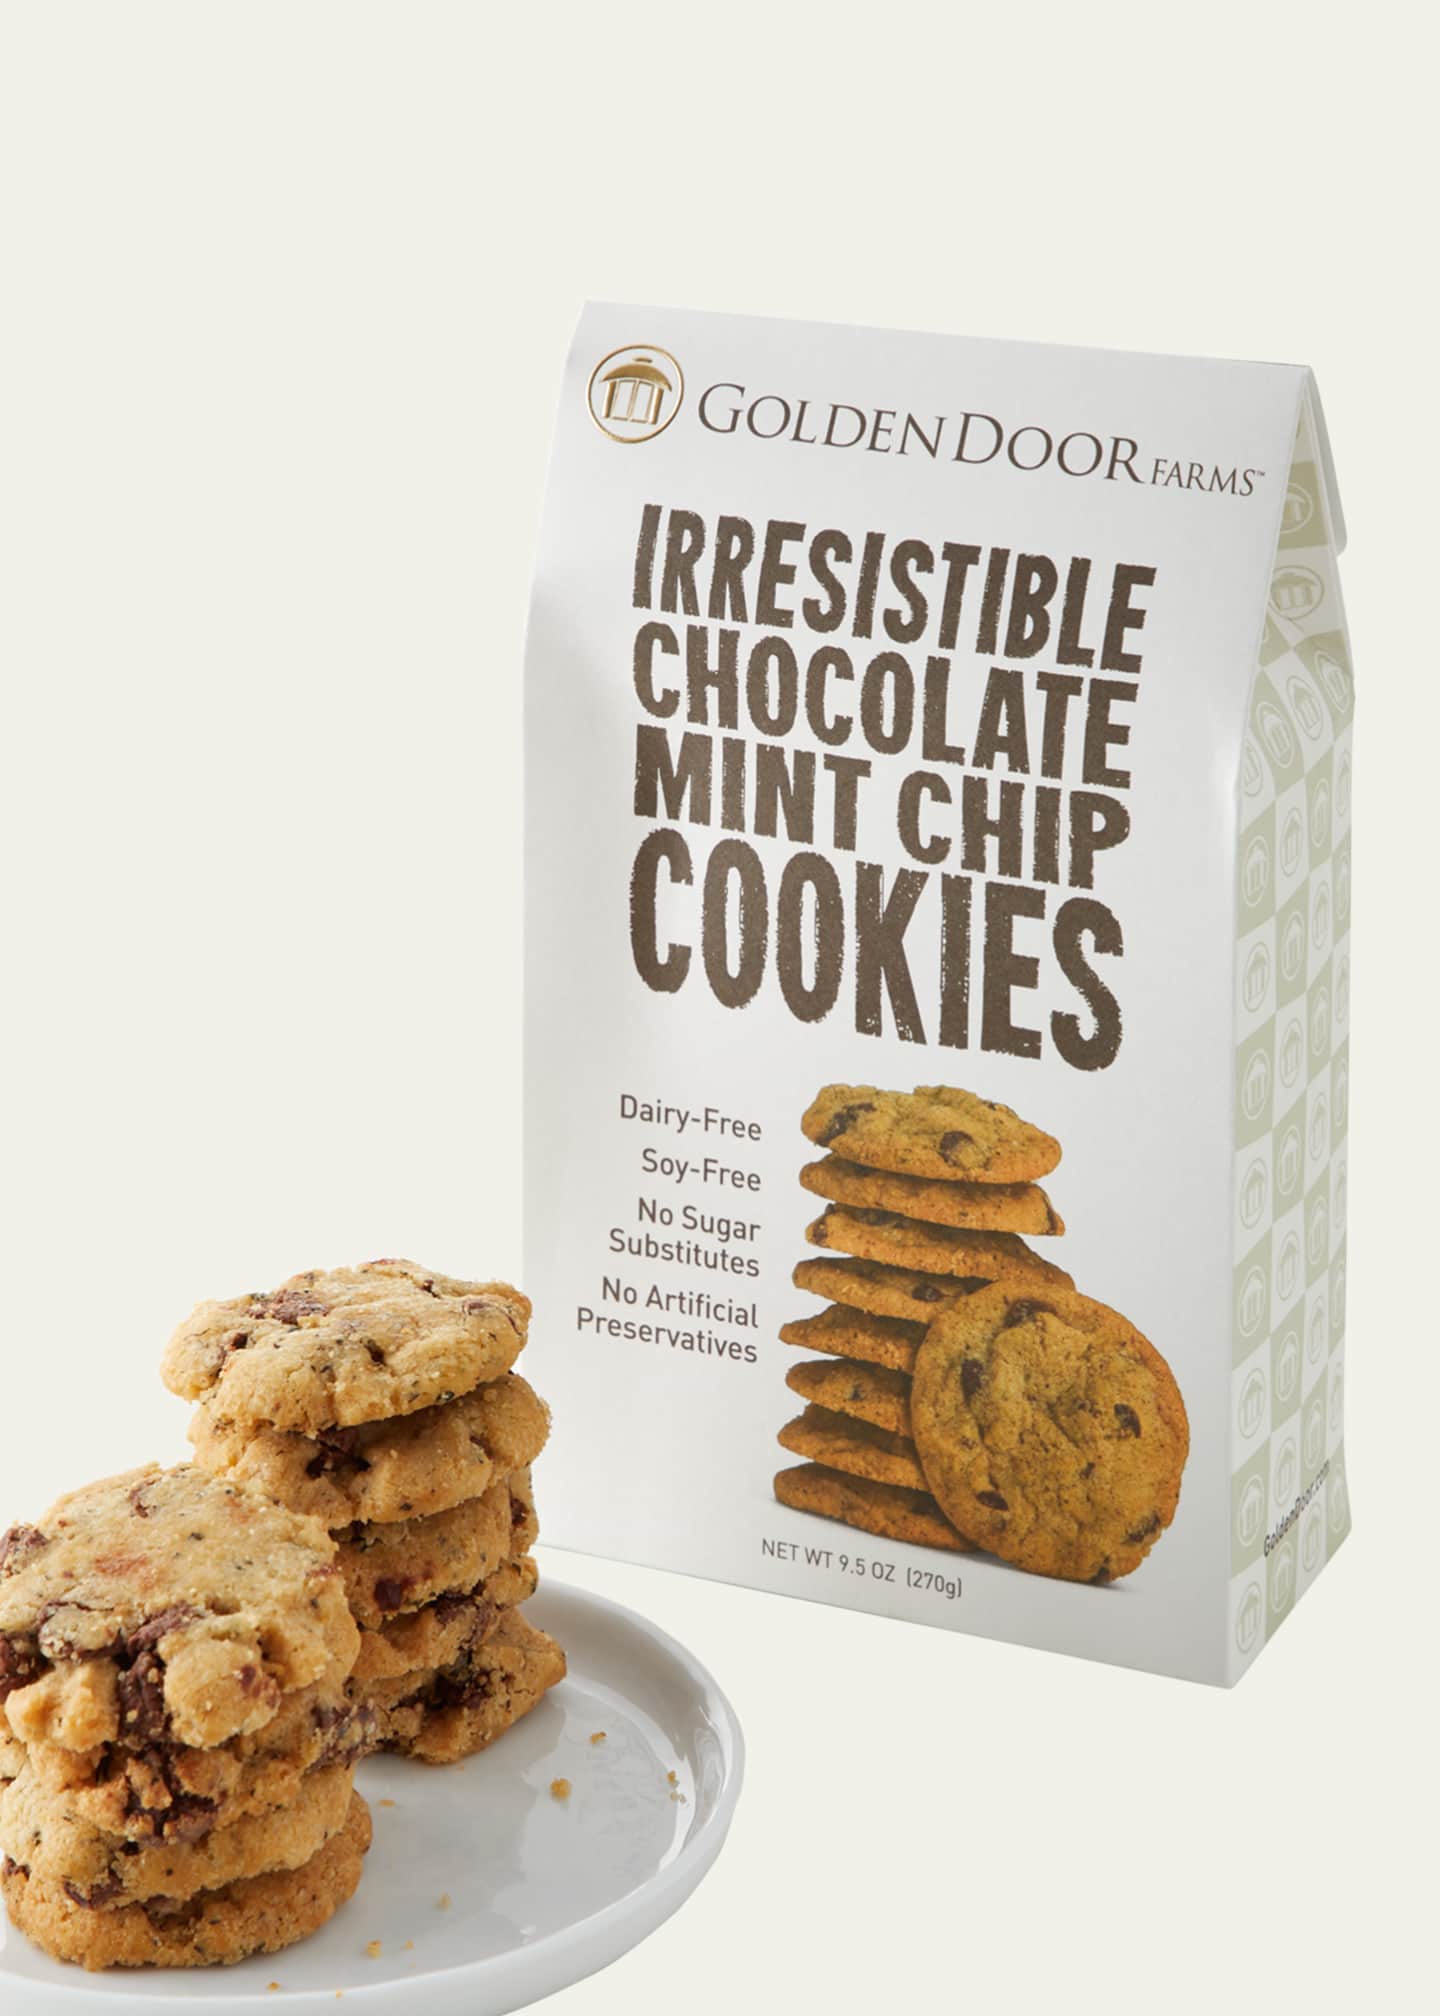 Golden Door Irresistible Chocolate Mint Chip Cookies